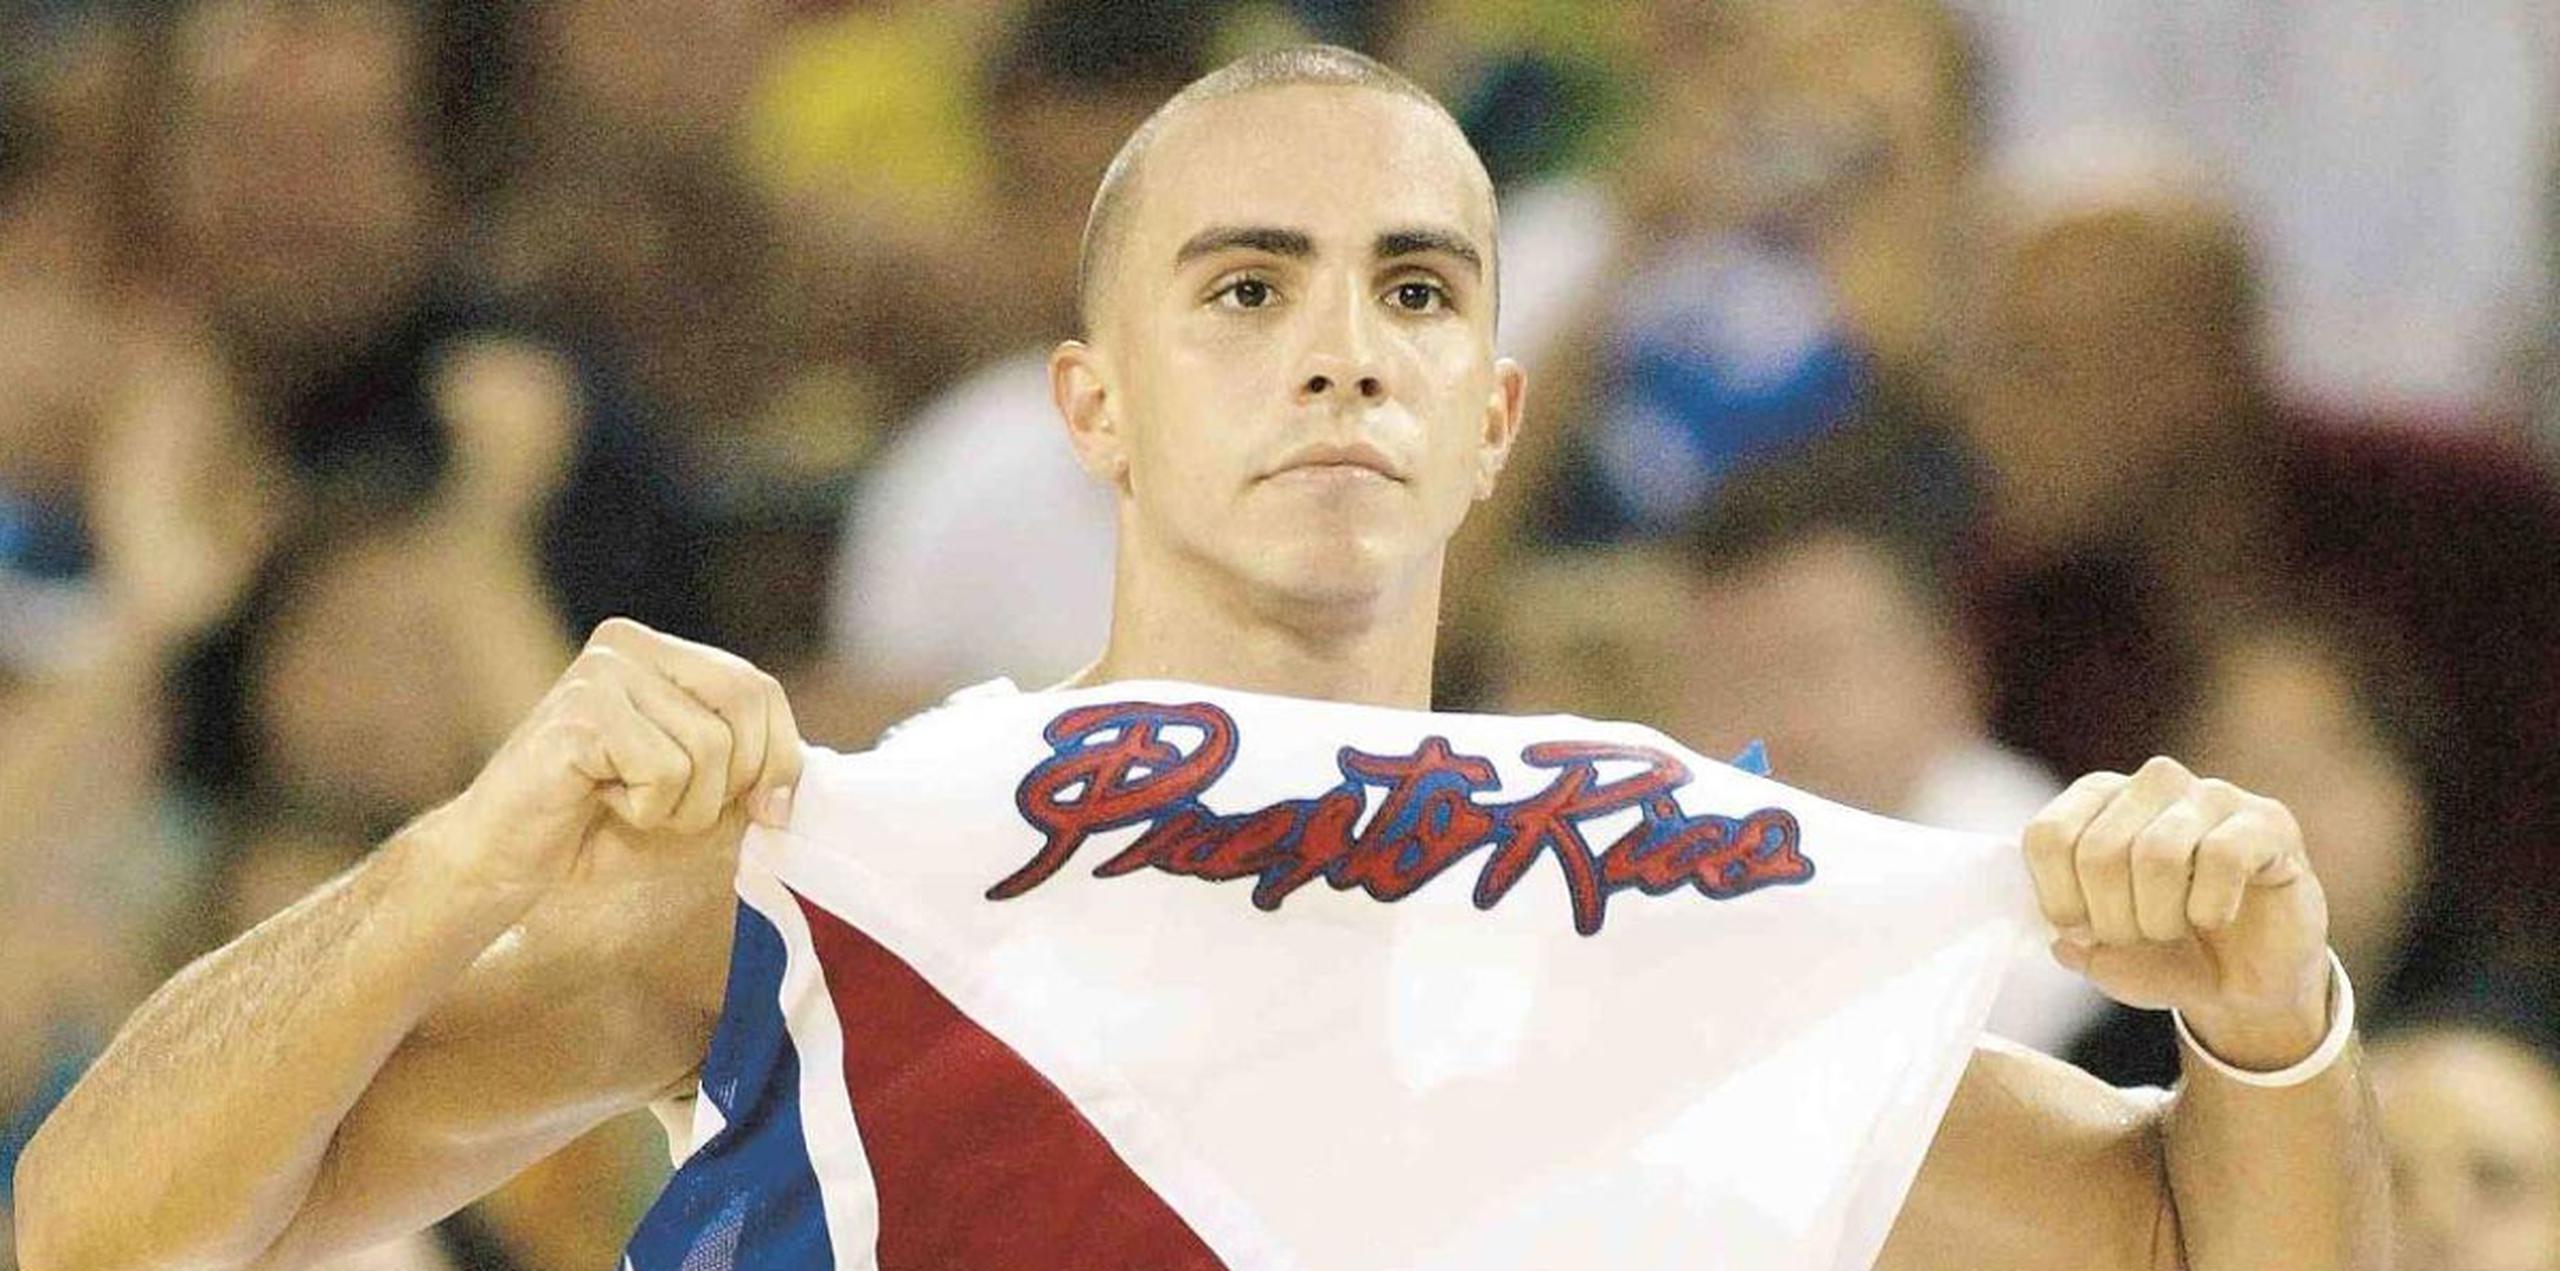 Liderado por el abanderado de Puerto Rico en los Juegos Atenas 2004, Carlos Arroyo, el Equipo Nacional de baloncesto dio la sorpresa al vencer al Dream Team de Estados Unidos en la ronda inicial. El marcador fue de 92-73.